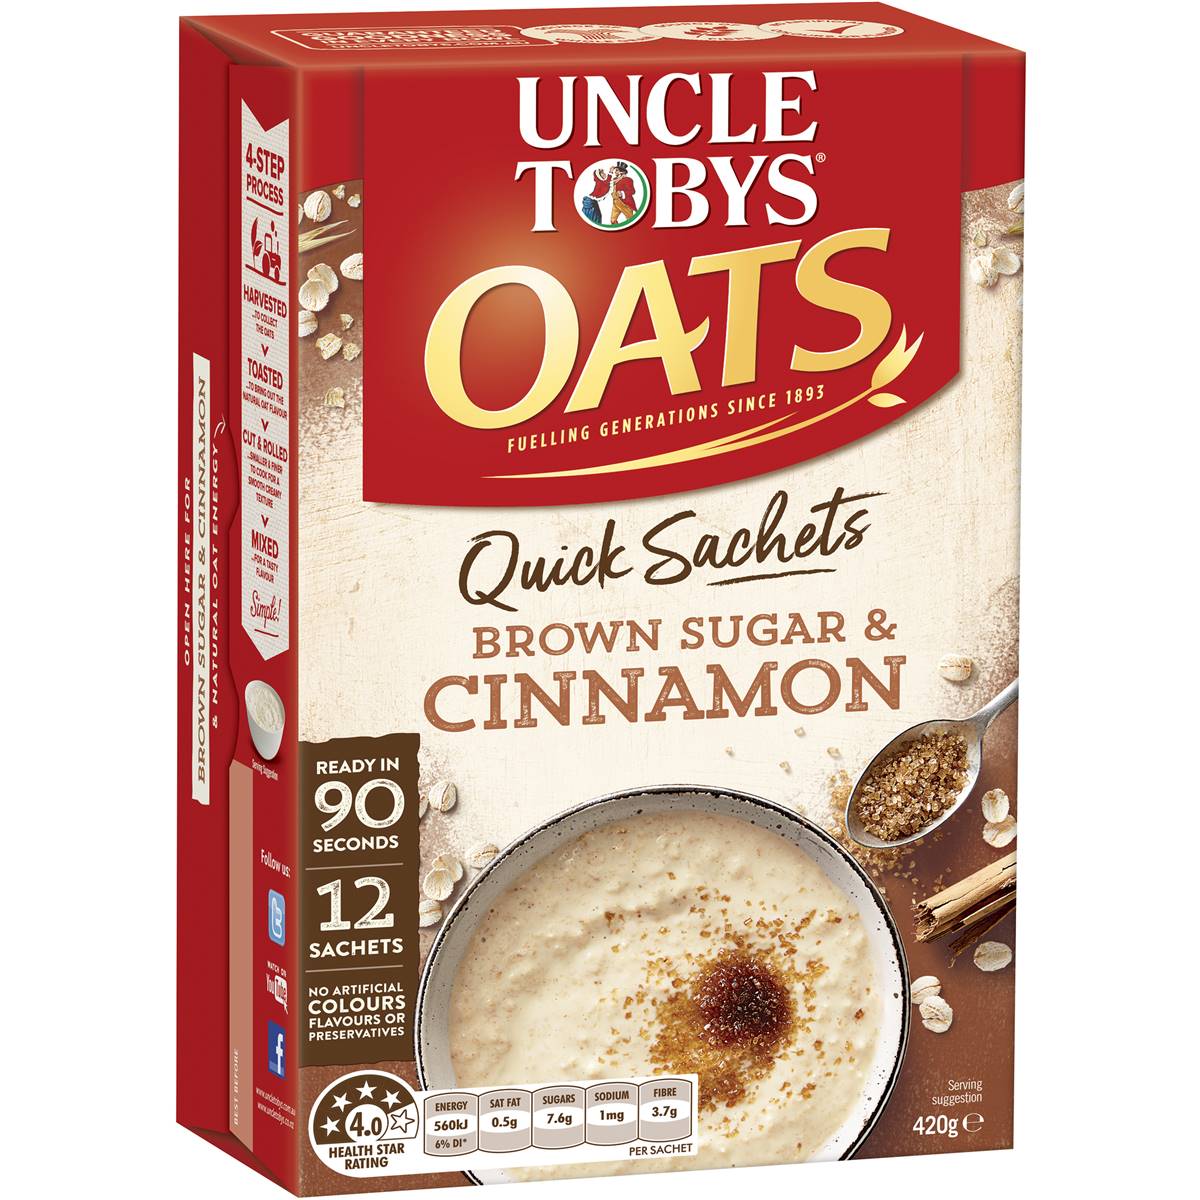 Calories in Uncle Tobys Oats Quick Sachets Brownsugar & Cinnamon Porridge